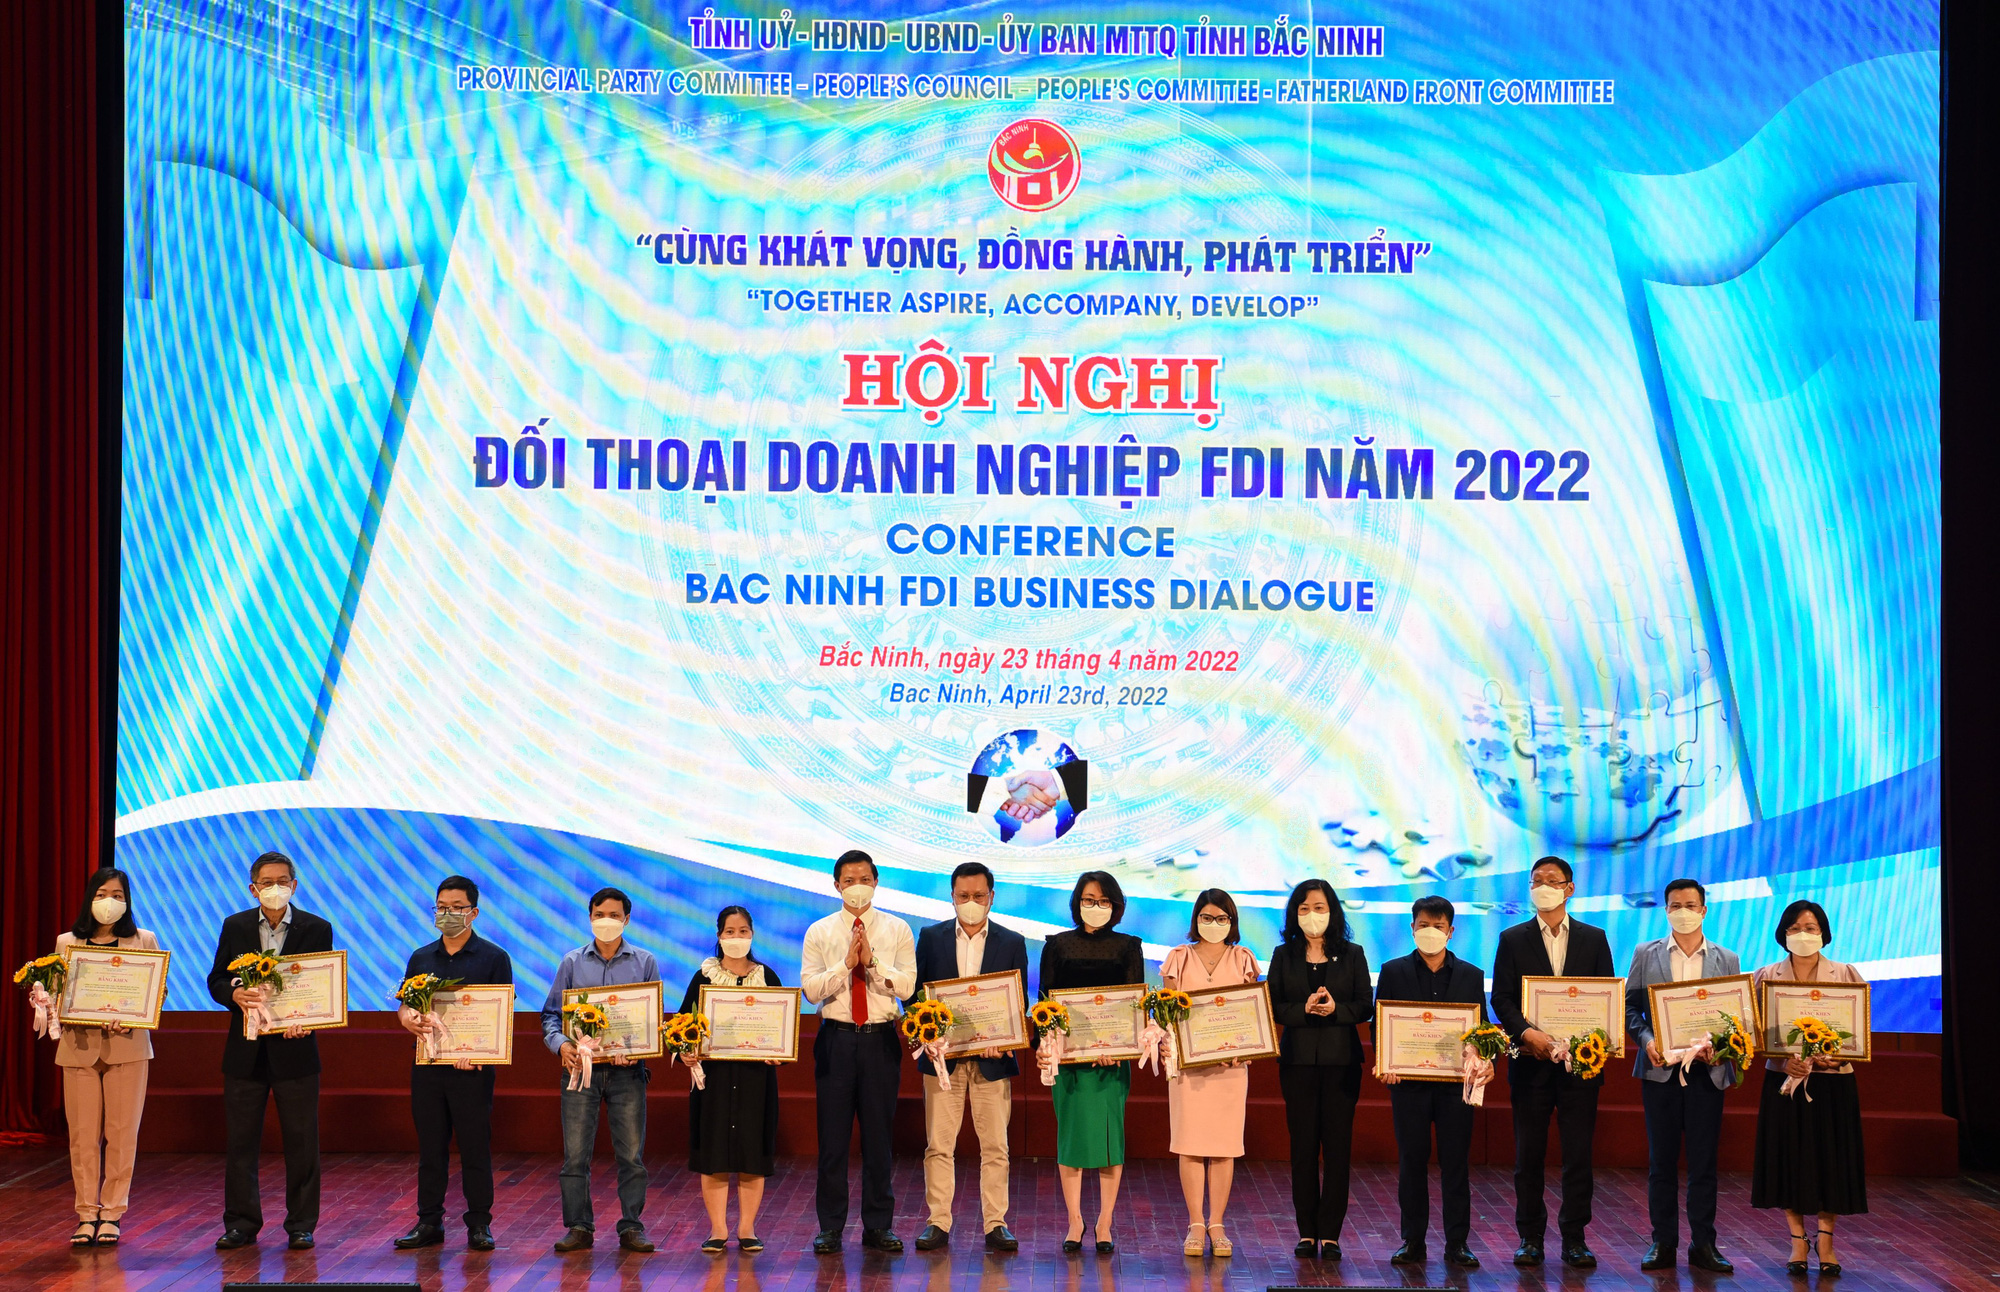 Lãnh đạo tỉnh Bắc Ninh nêu lý do đồng hành cùng doanh nghiệp - Ảnh 3.